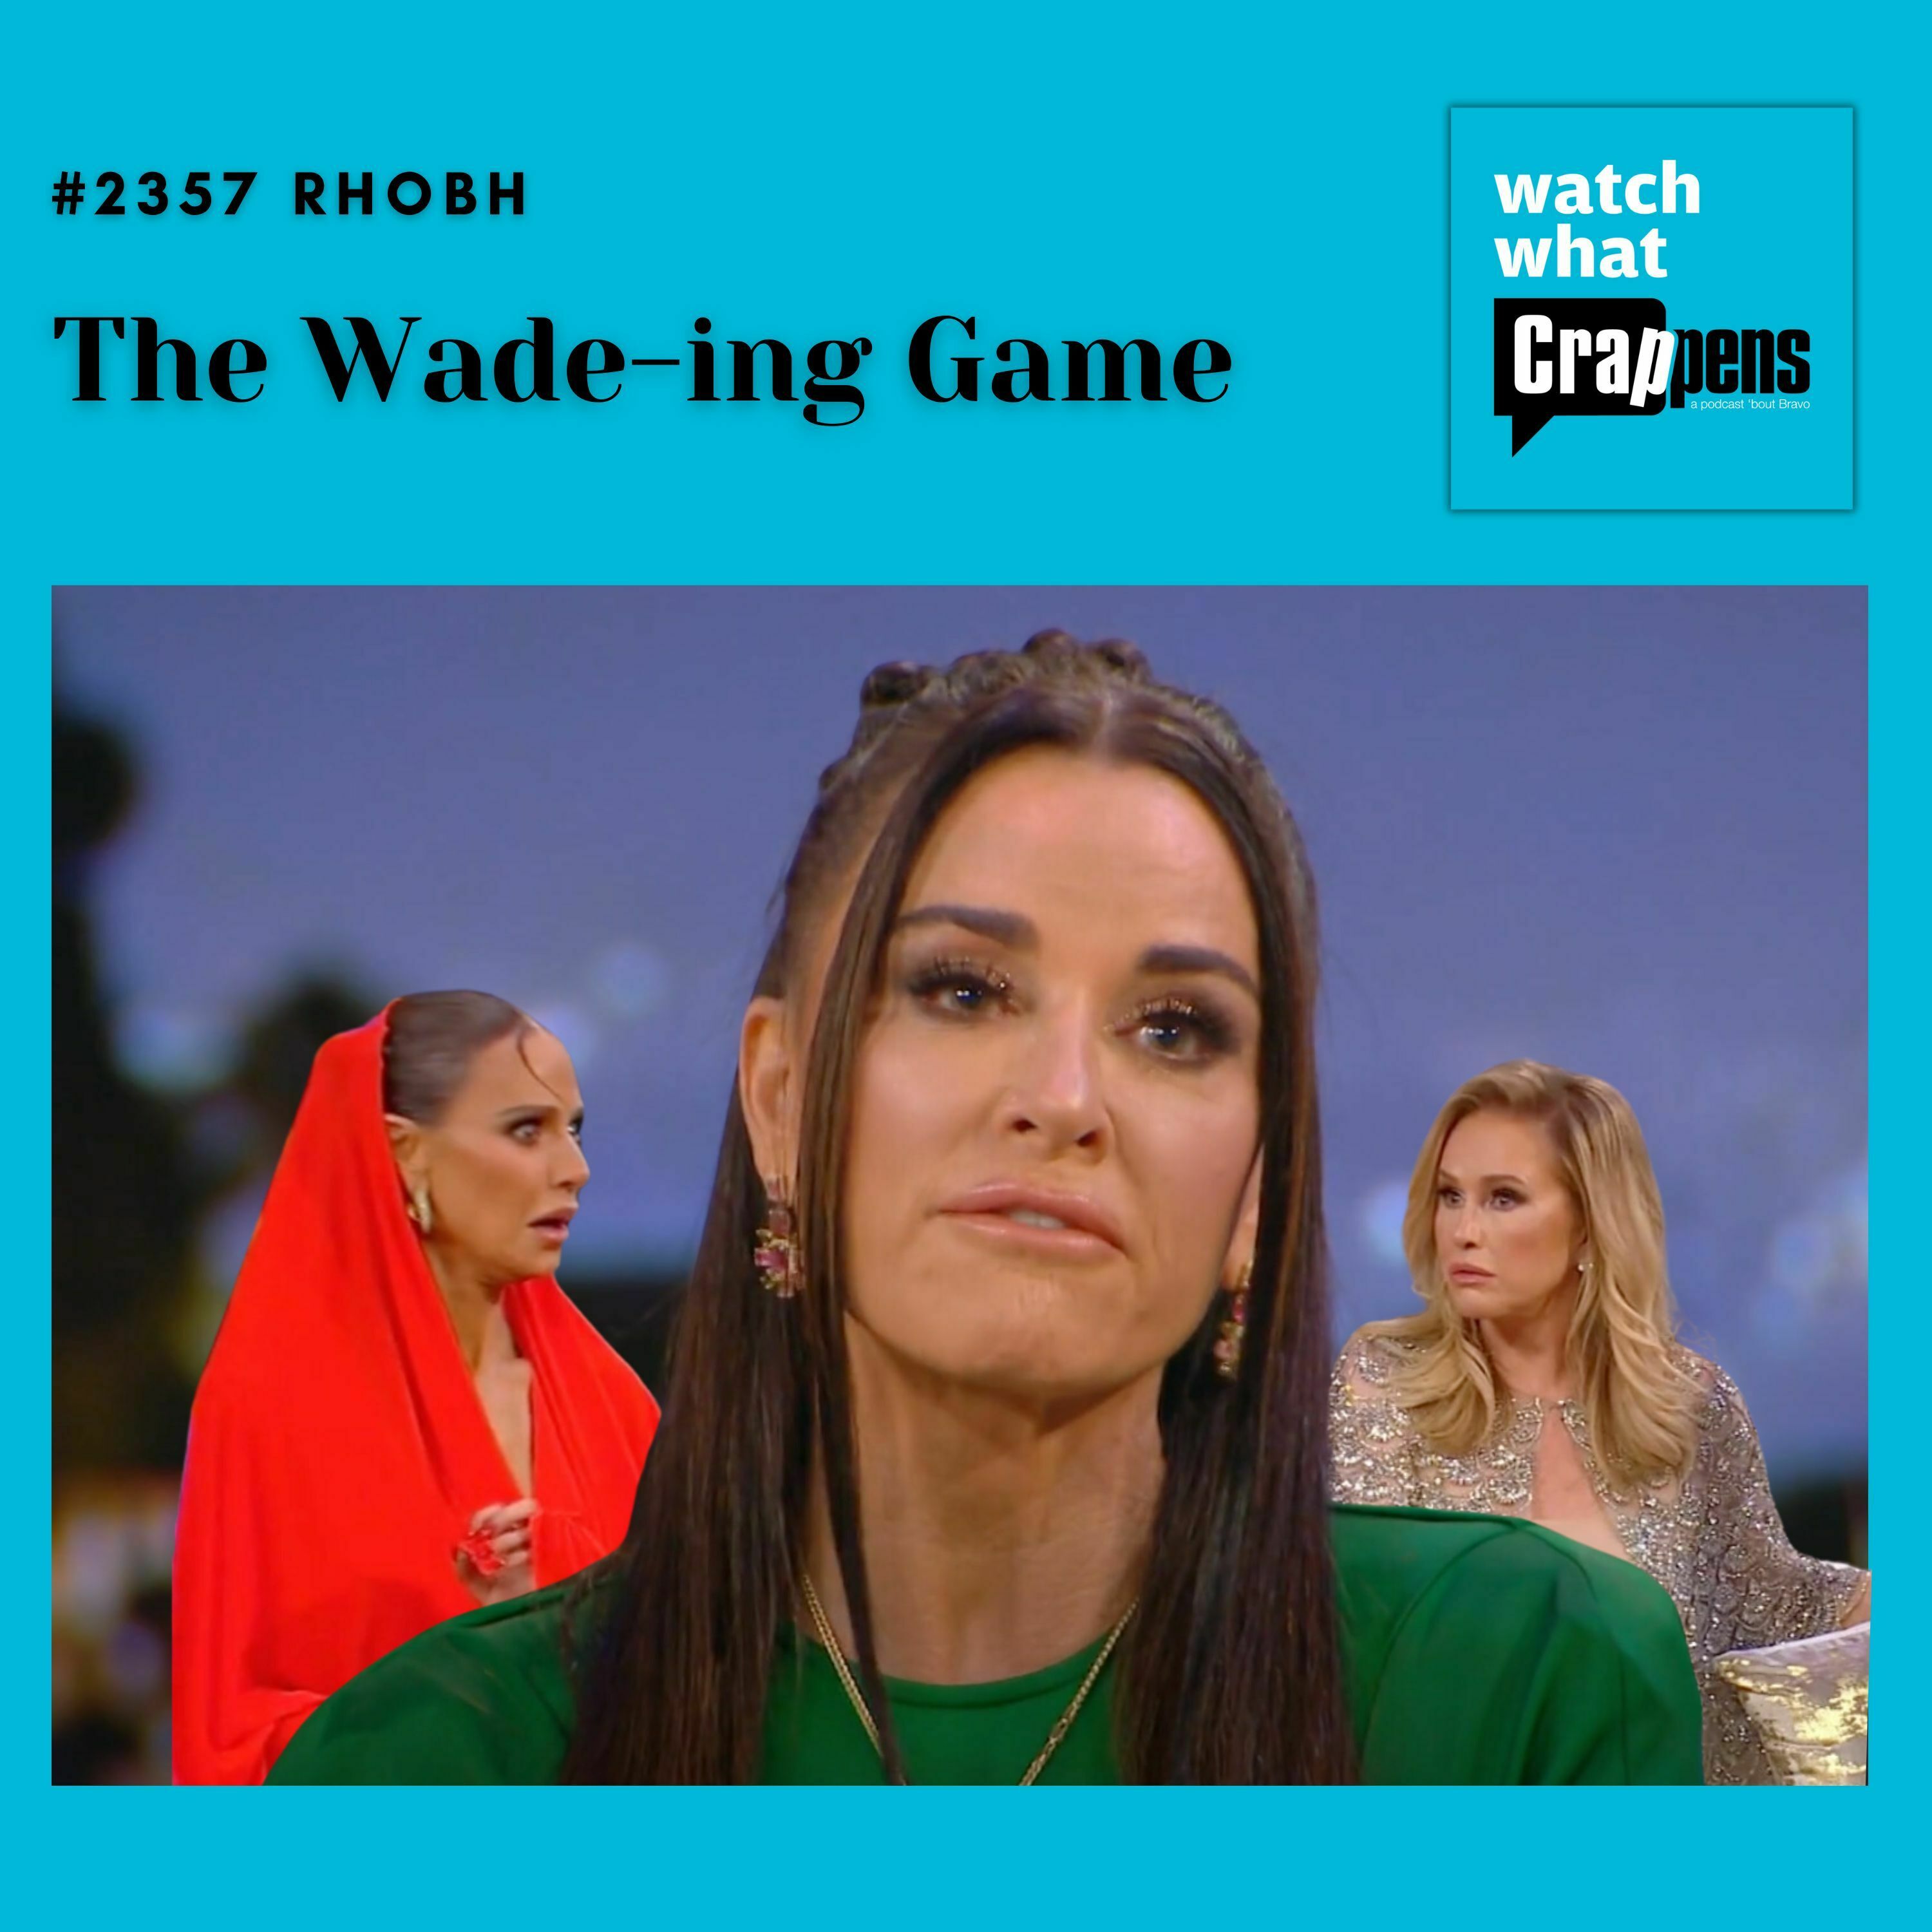 #2357 RHOBH: The Wade-ing Game